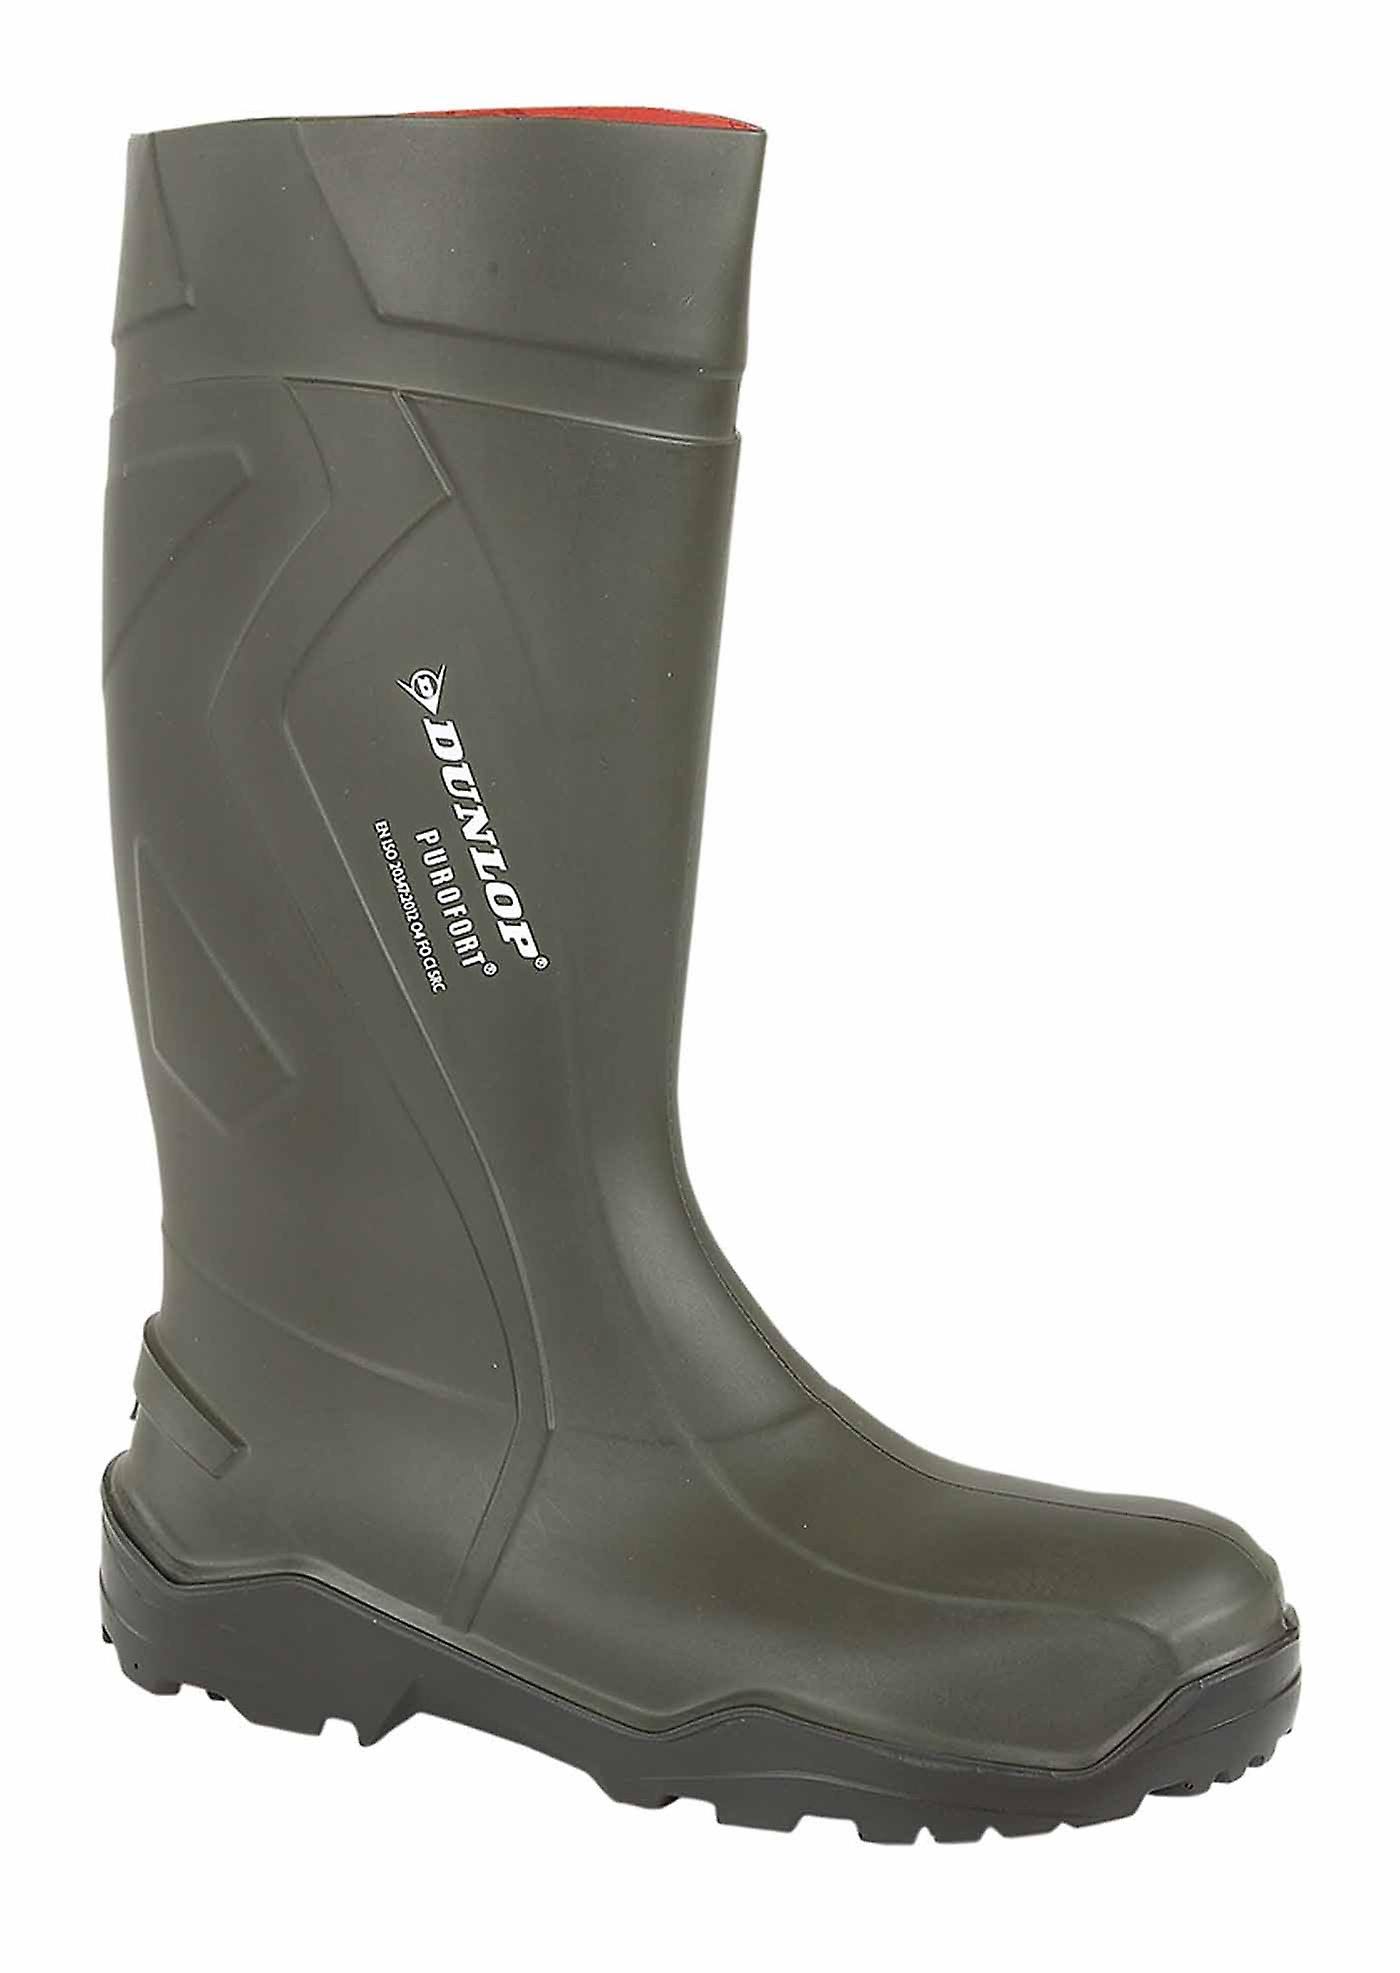 Dunlop Purofort Insulated Boots